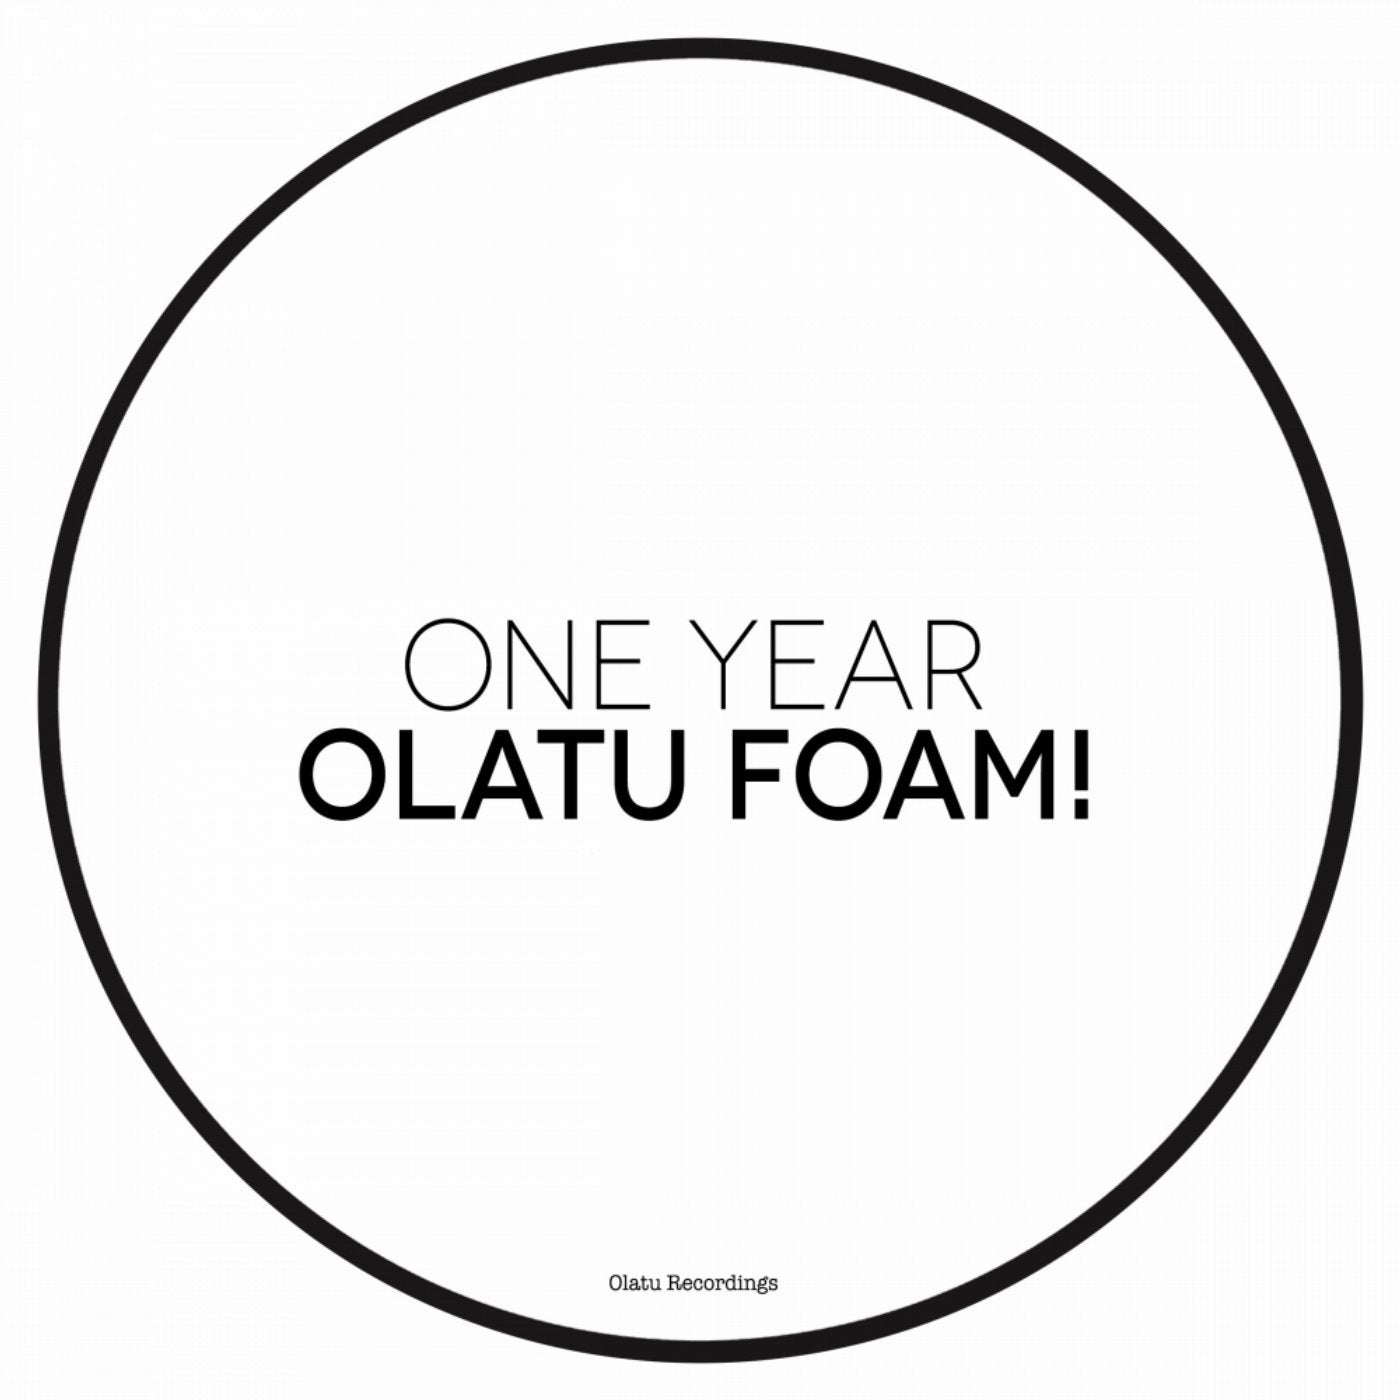 Olatu Foam! One Year